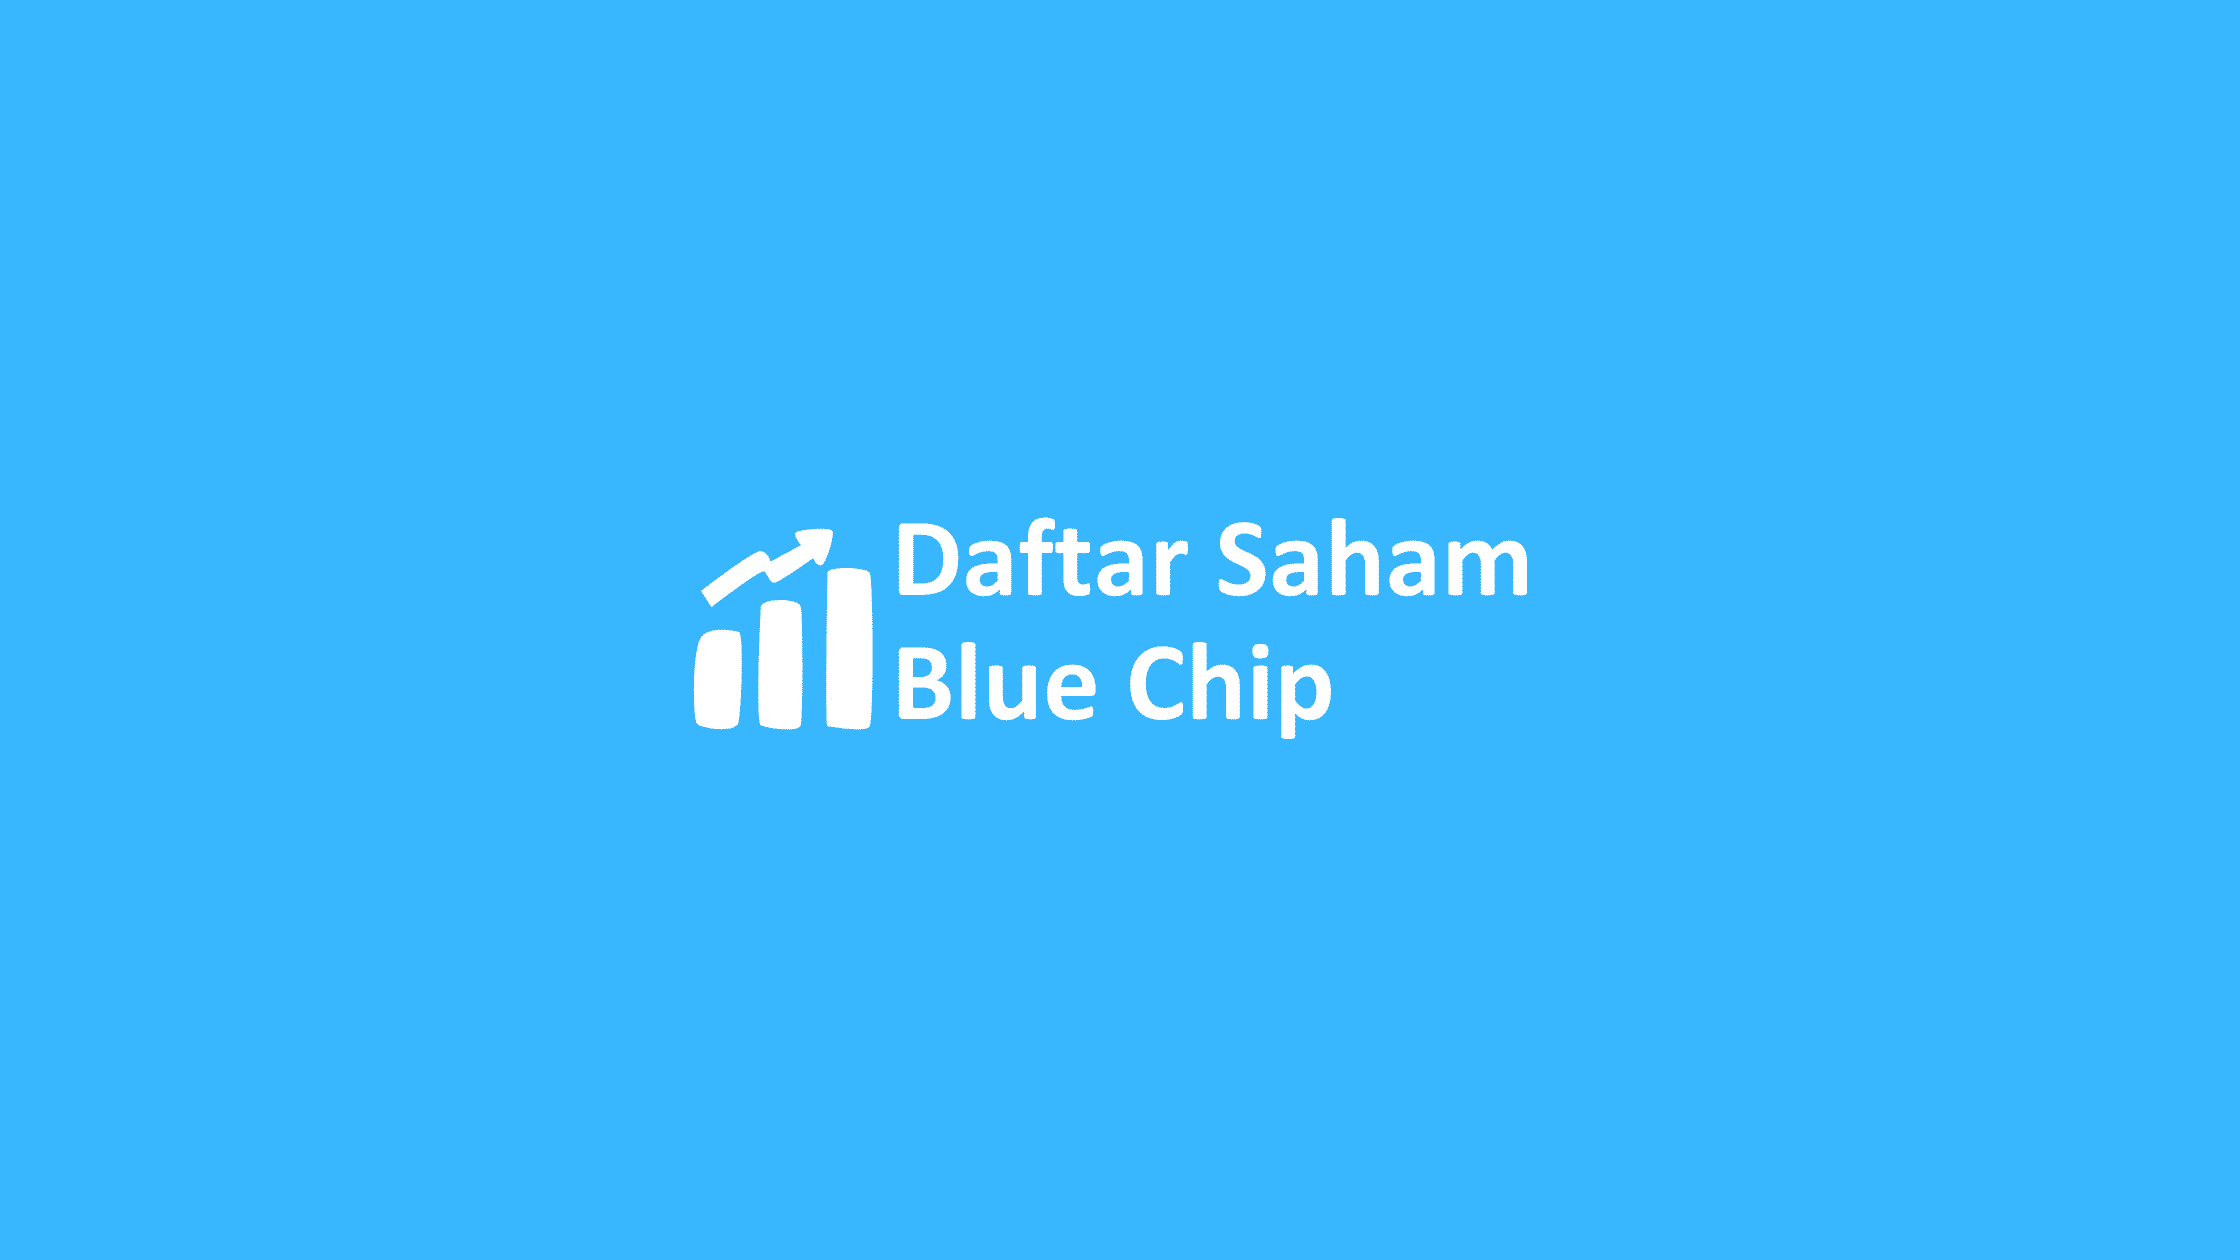 daftar saham blue chip